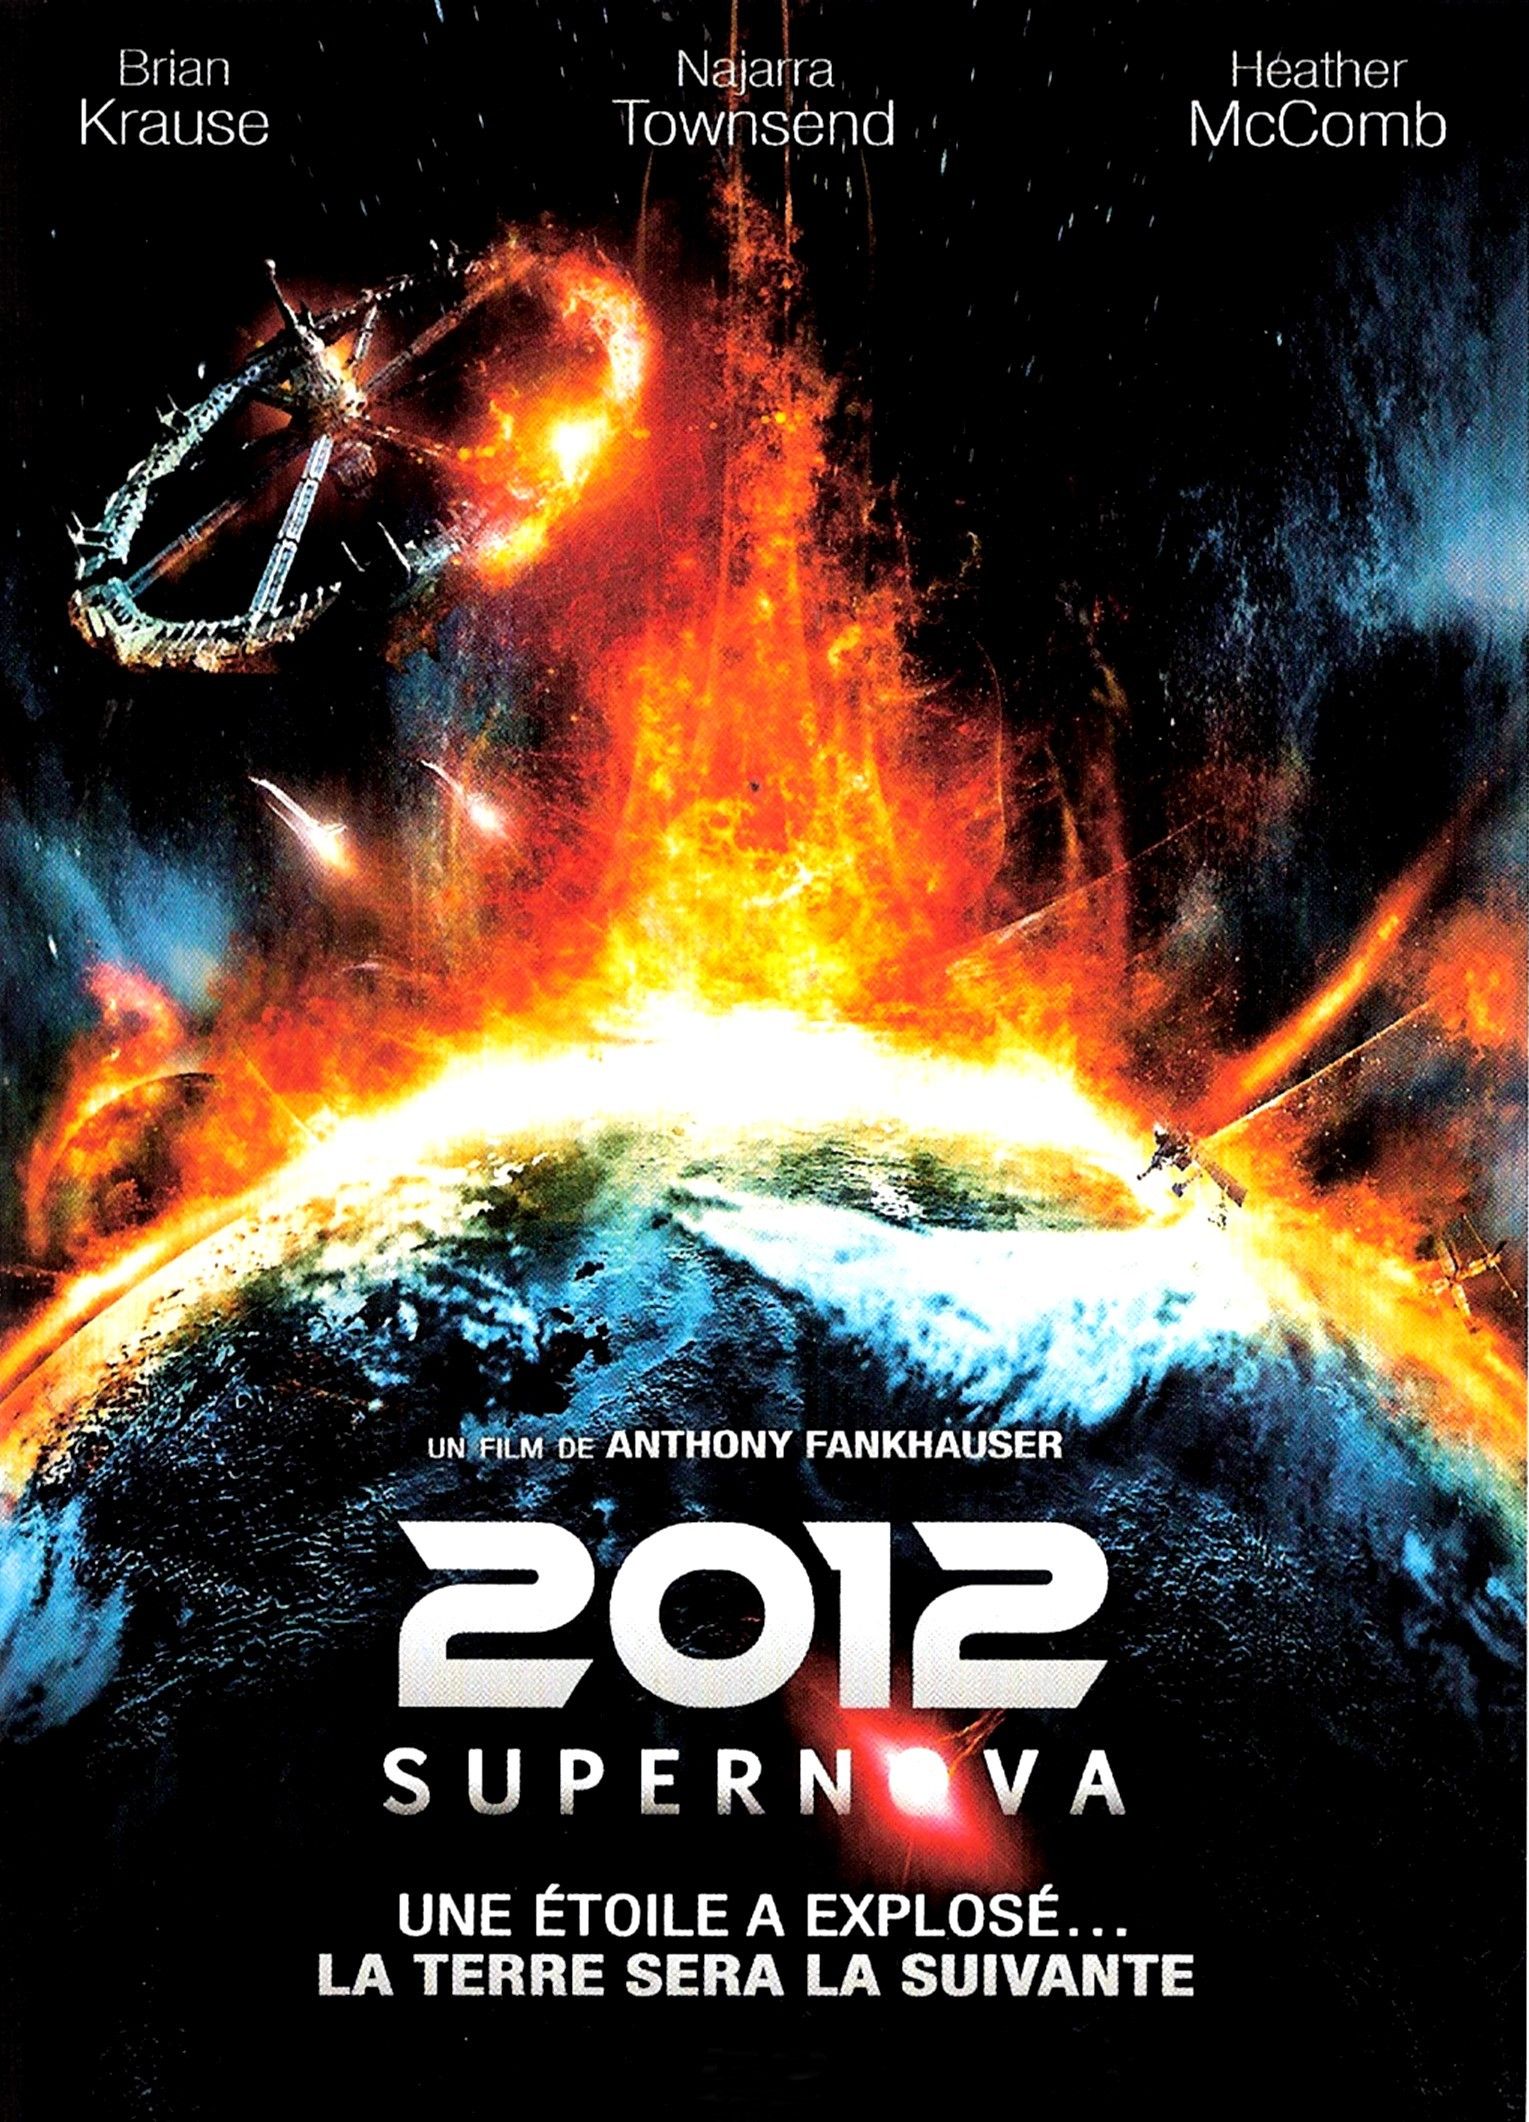 2012 supernova movie review